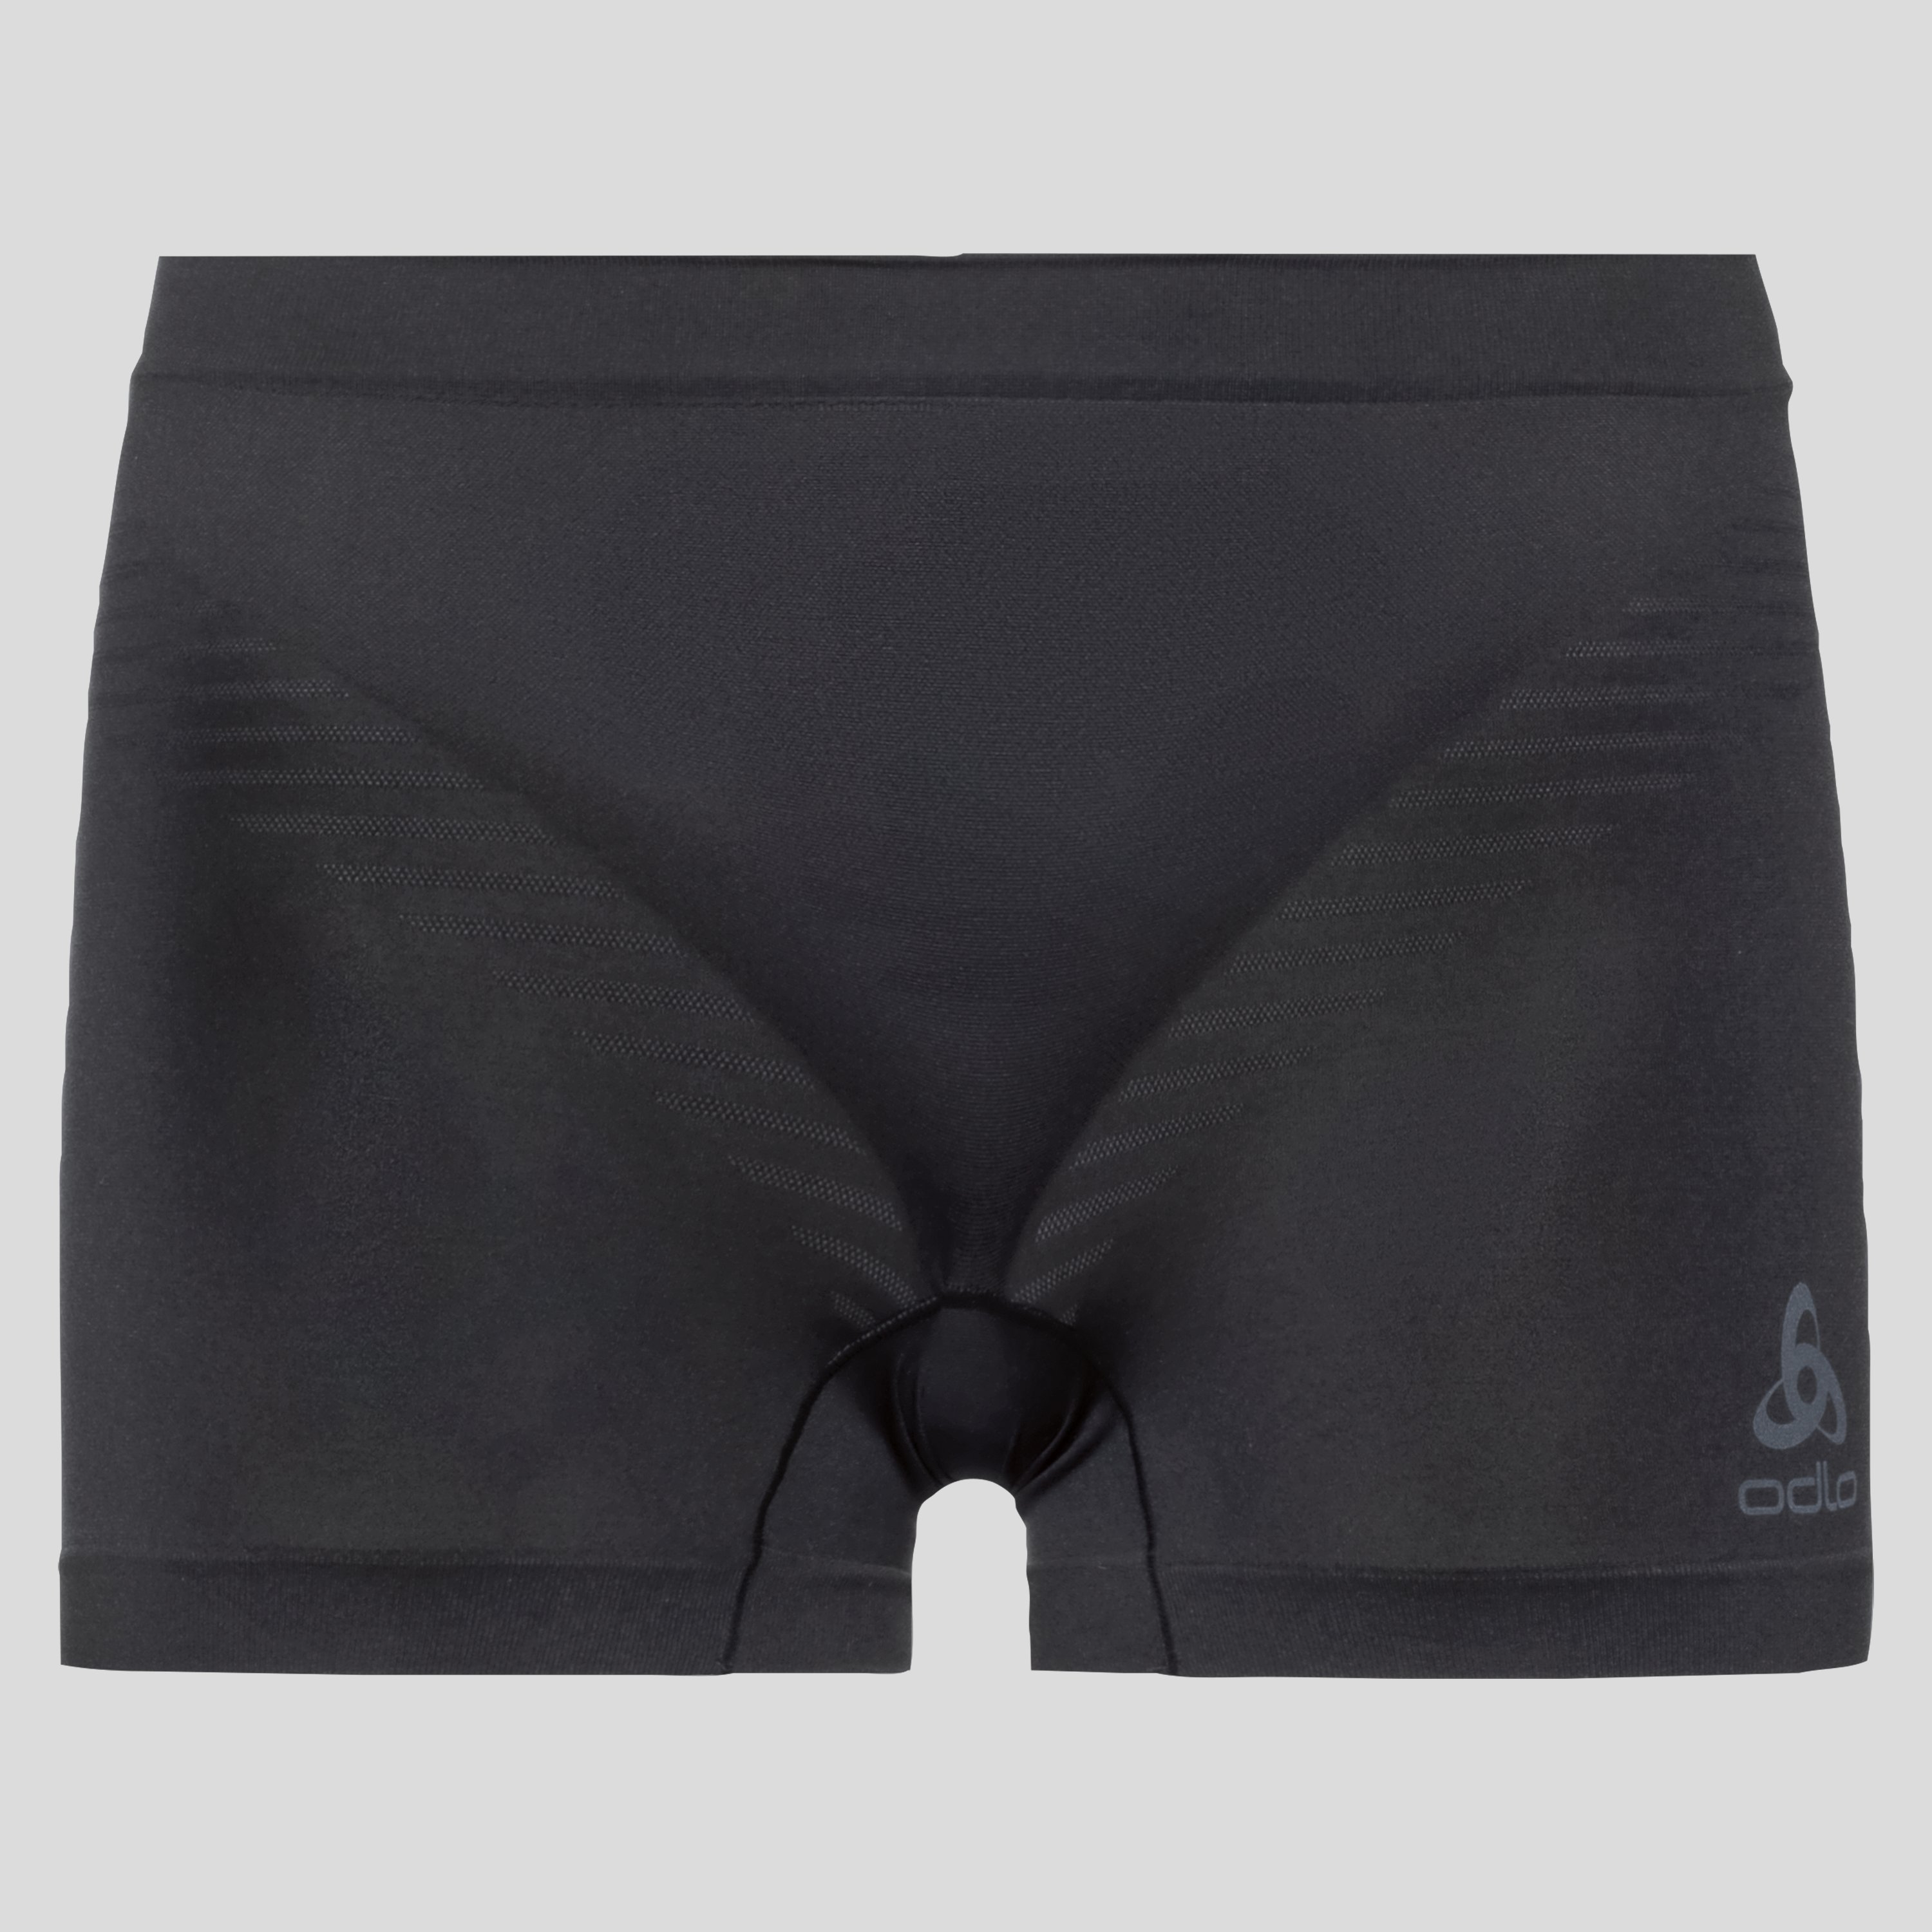 ODLO Performance X-Light Panty für Damen, XS, schwarz